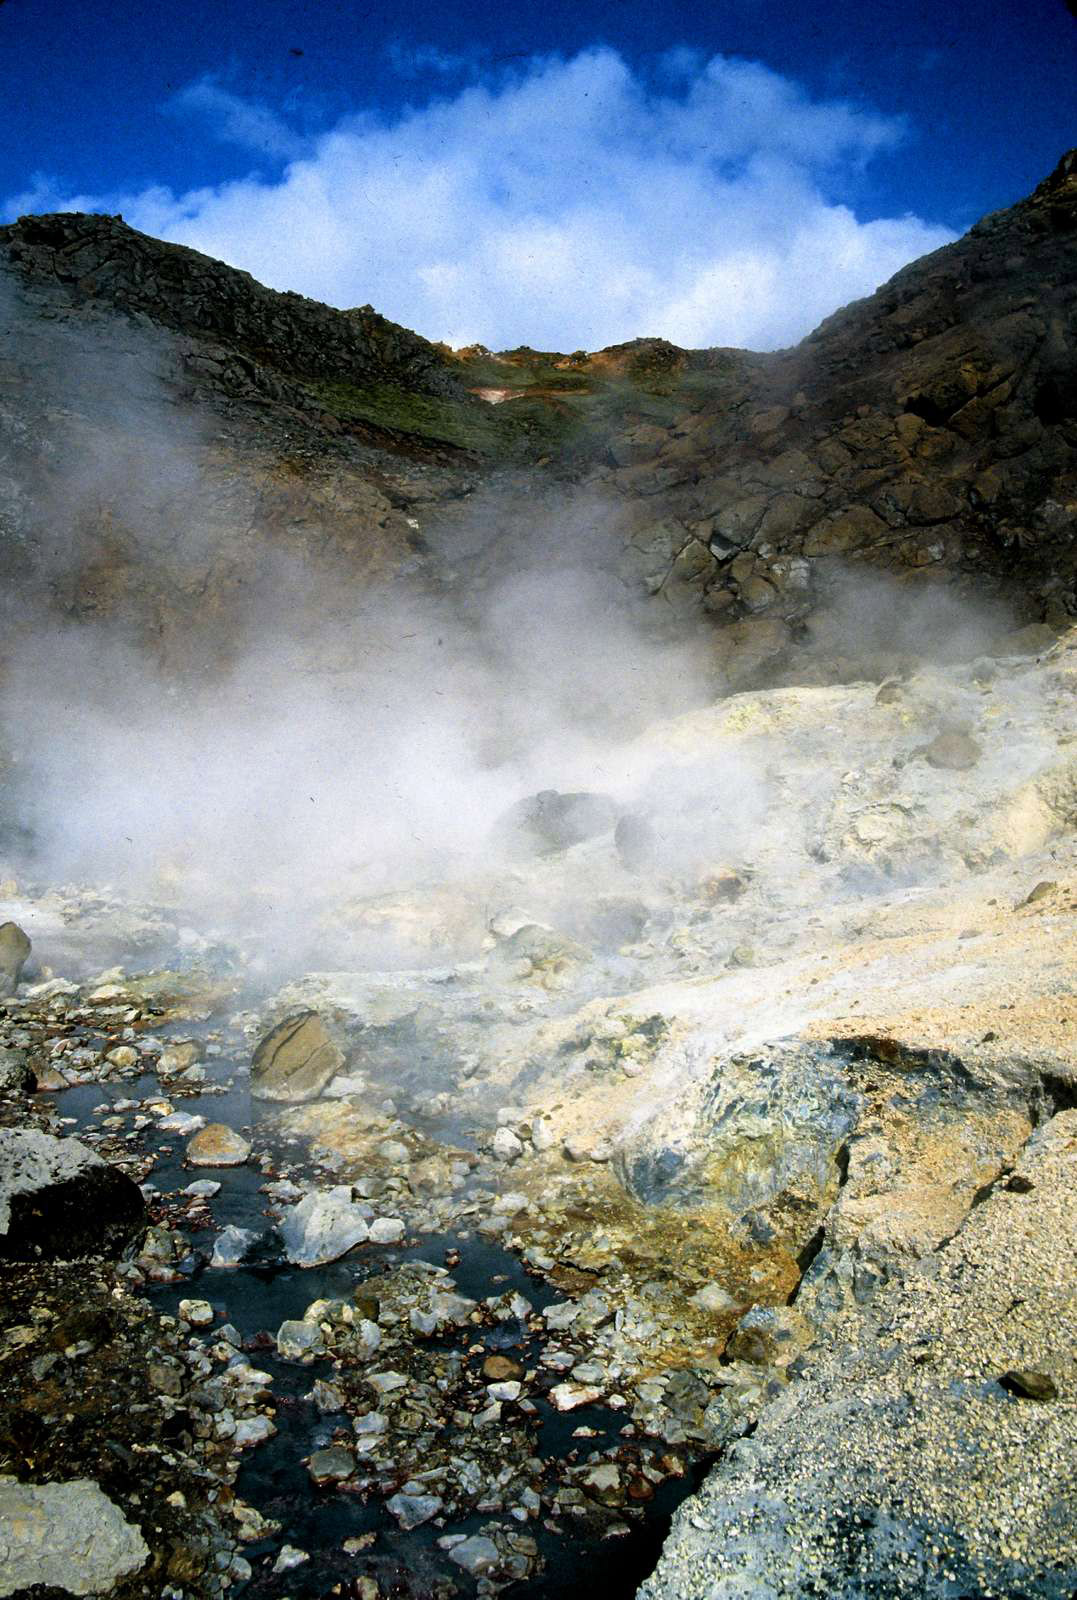 a steamy, sulfury landscape near Reykjavik